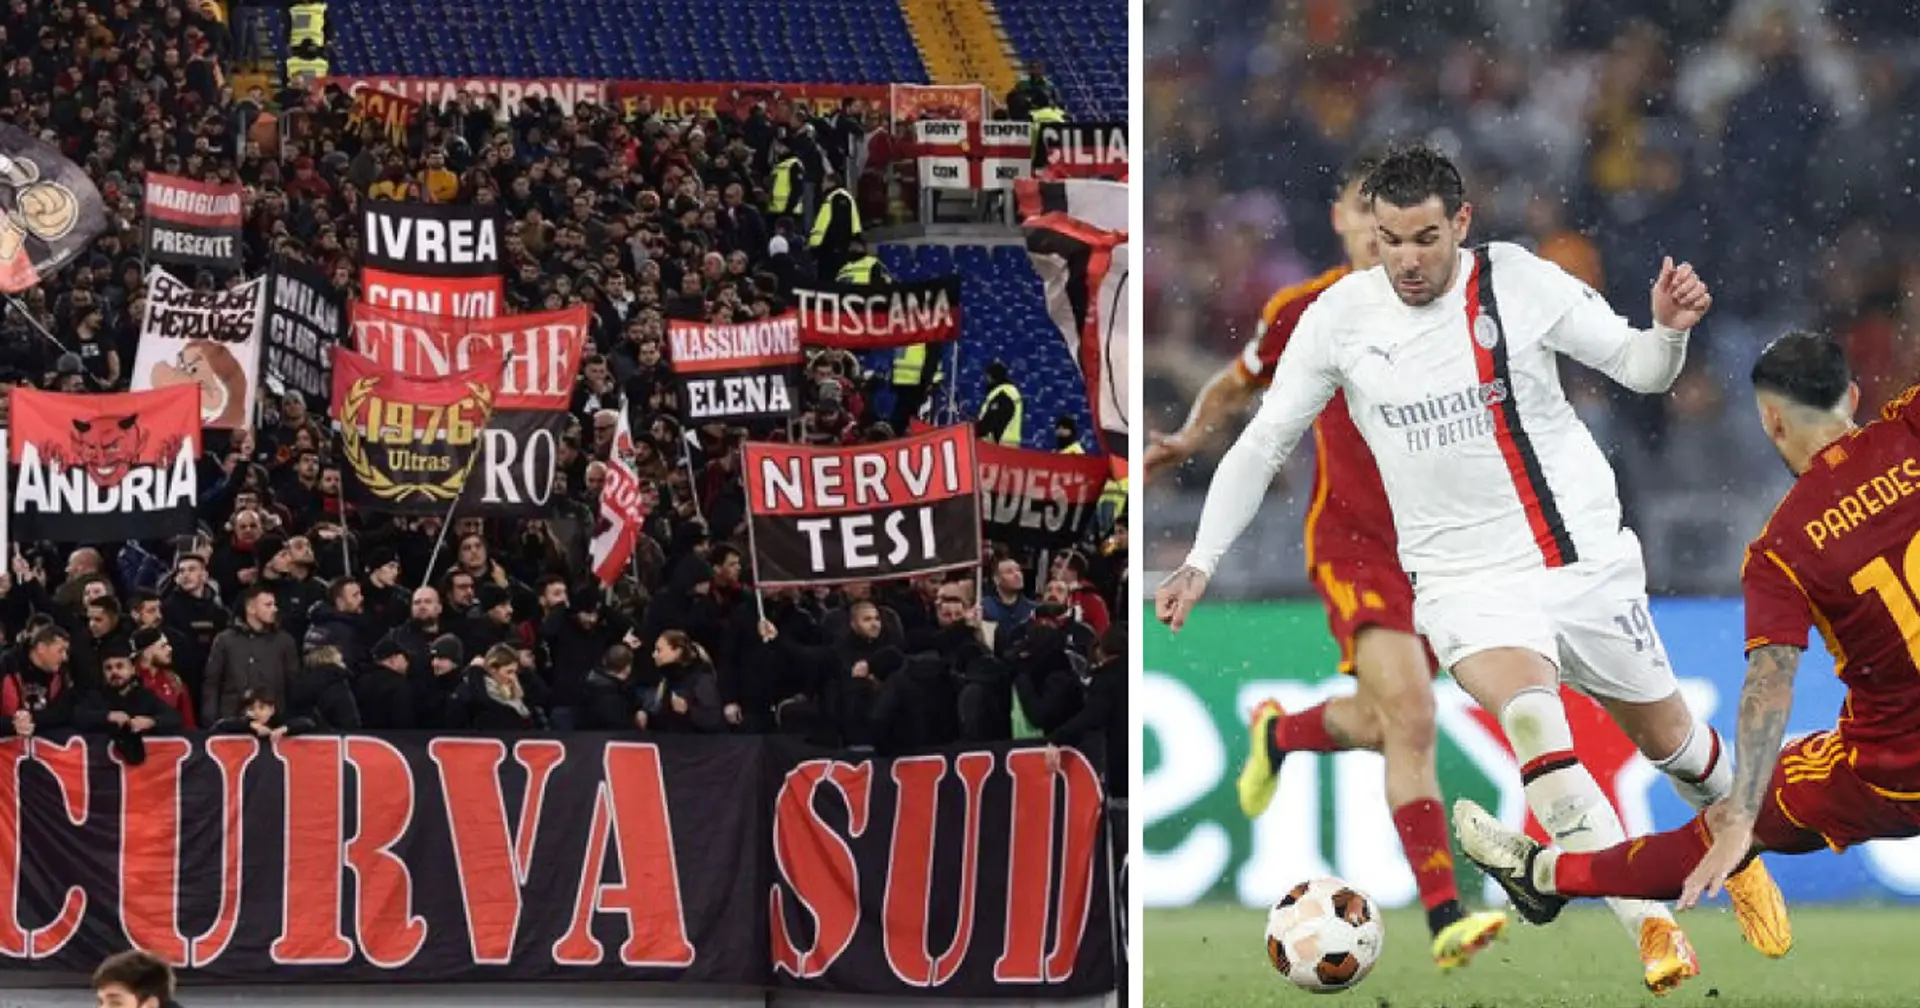 Die Fans des AC Mailand haben die Spieler nach dem Europa-League-Aus gegen AS Rom zurechtgewiesen: Sie riefen "Zeigt uns eure Eier" 